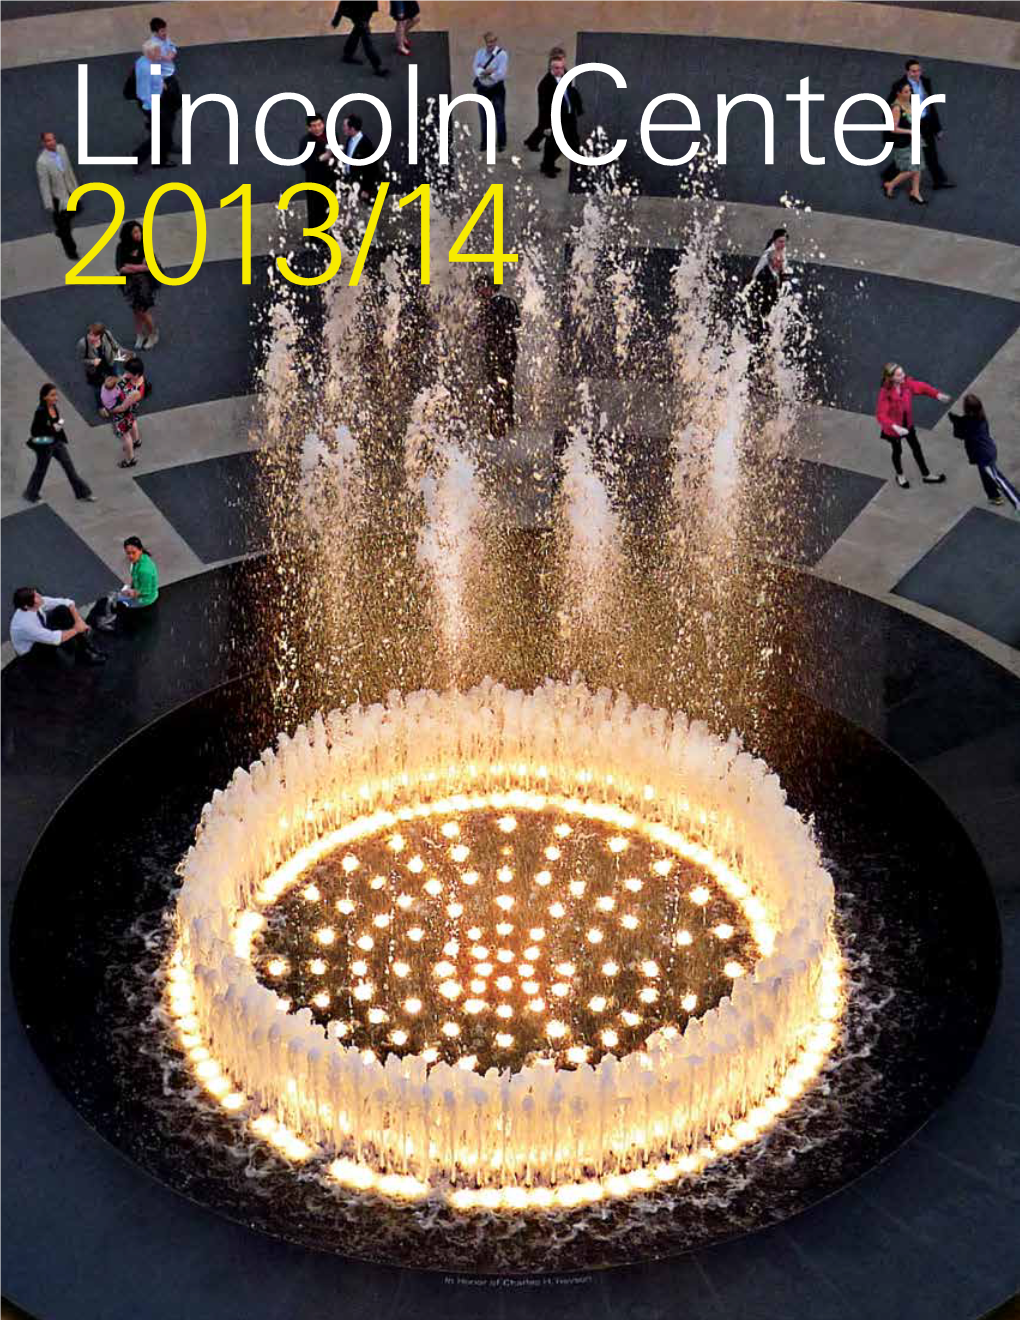 Lincoln Center 2013/14 Annual Report